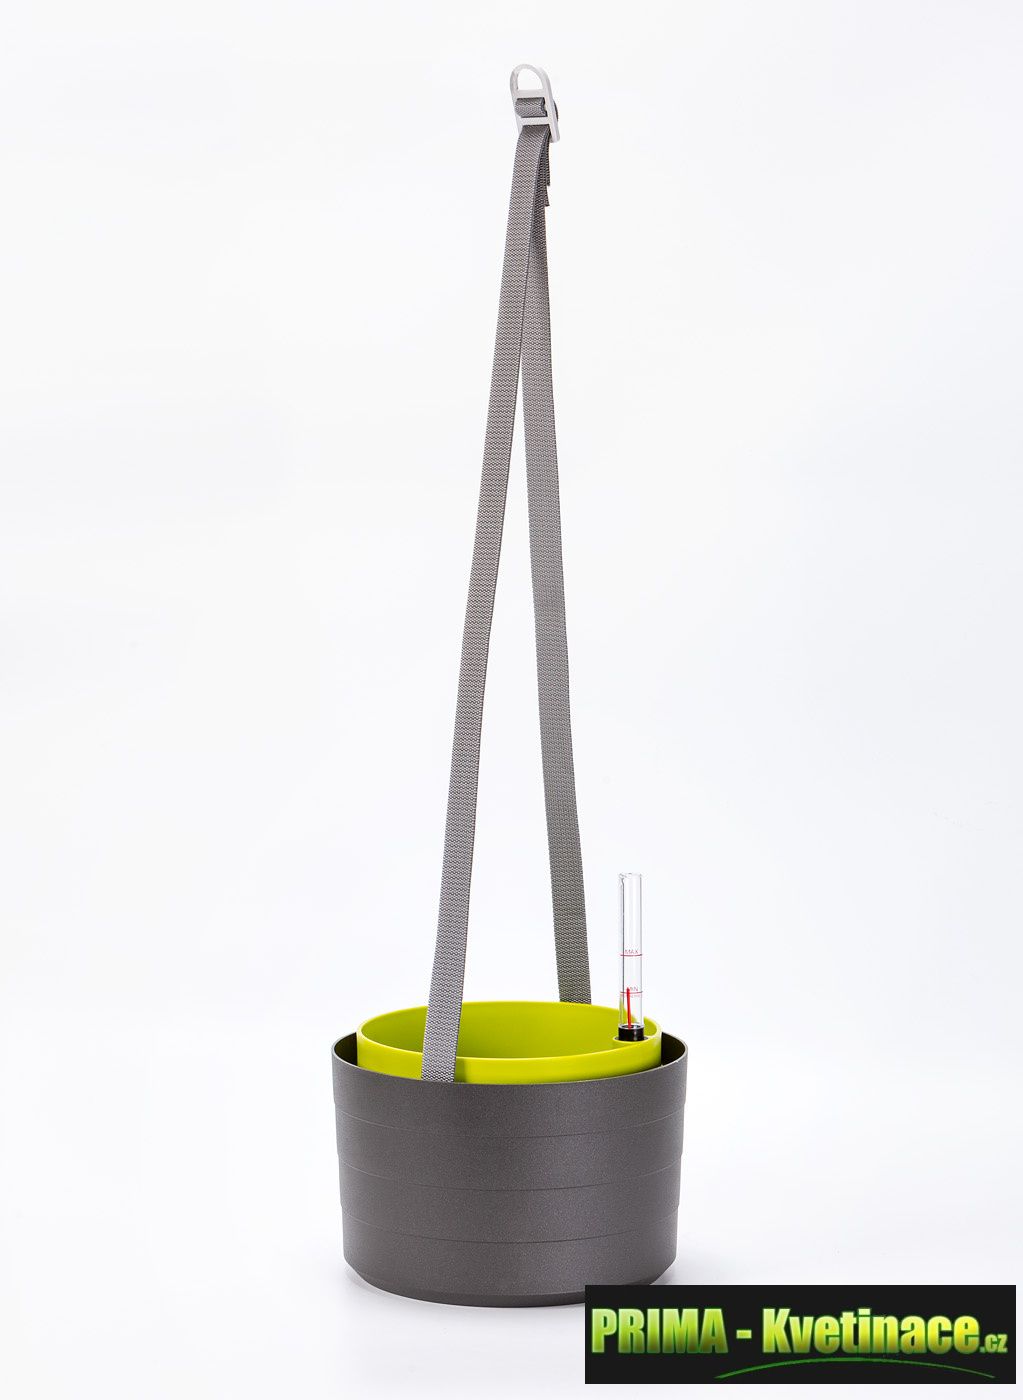 Prima-květináče Plastový samozavlažovací květináč 30cm - designový Plastia samozavlažovací plastové venkovní závěsné